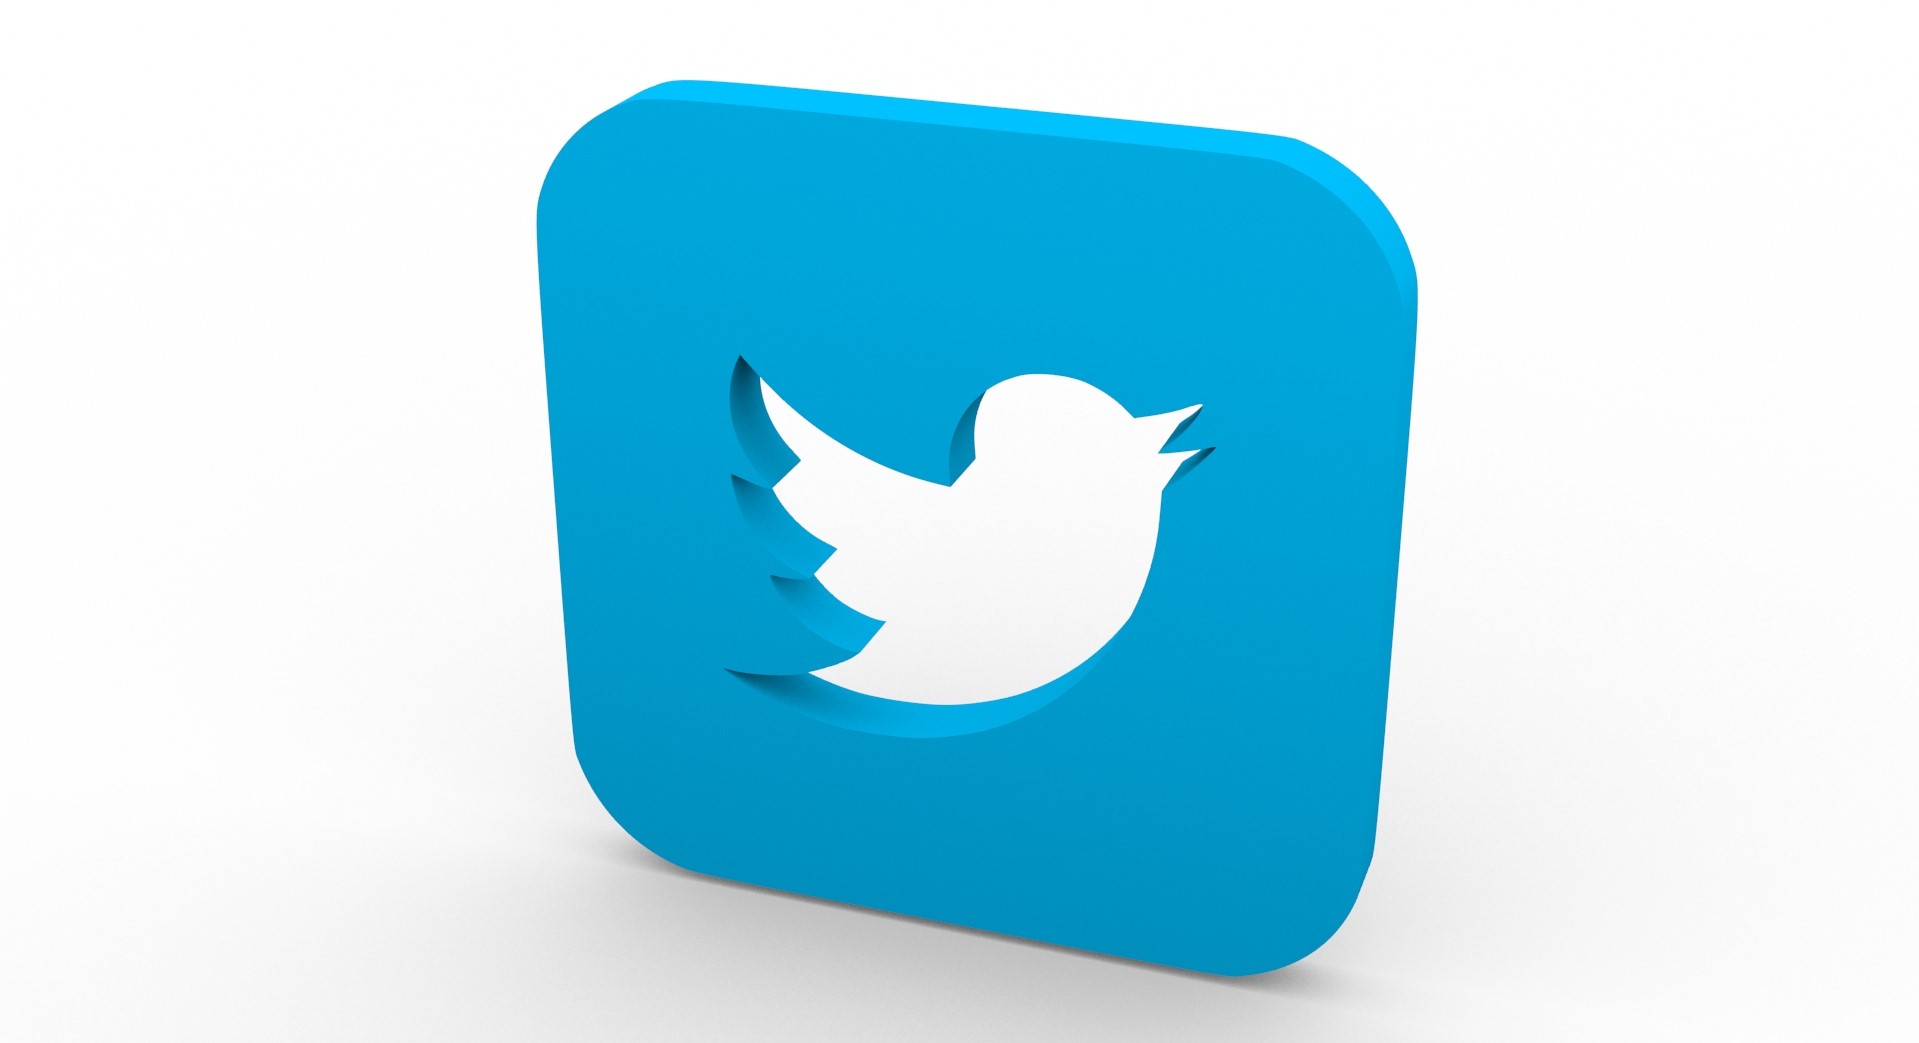 Twitter's Q4 revenues beat market estimates, hit USD 909 million, 